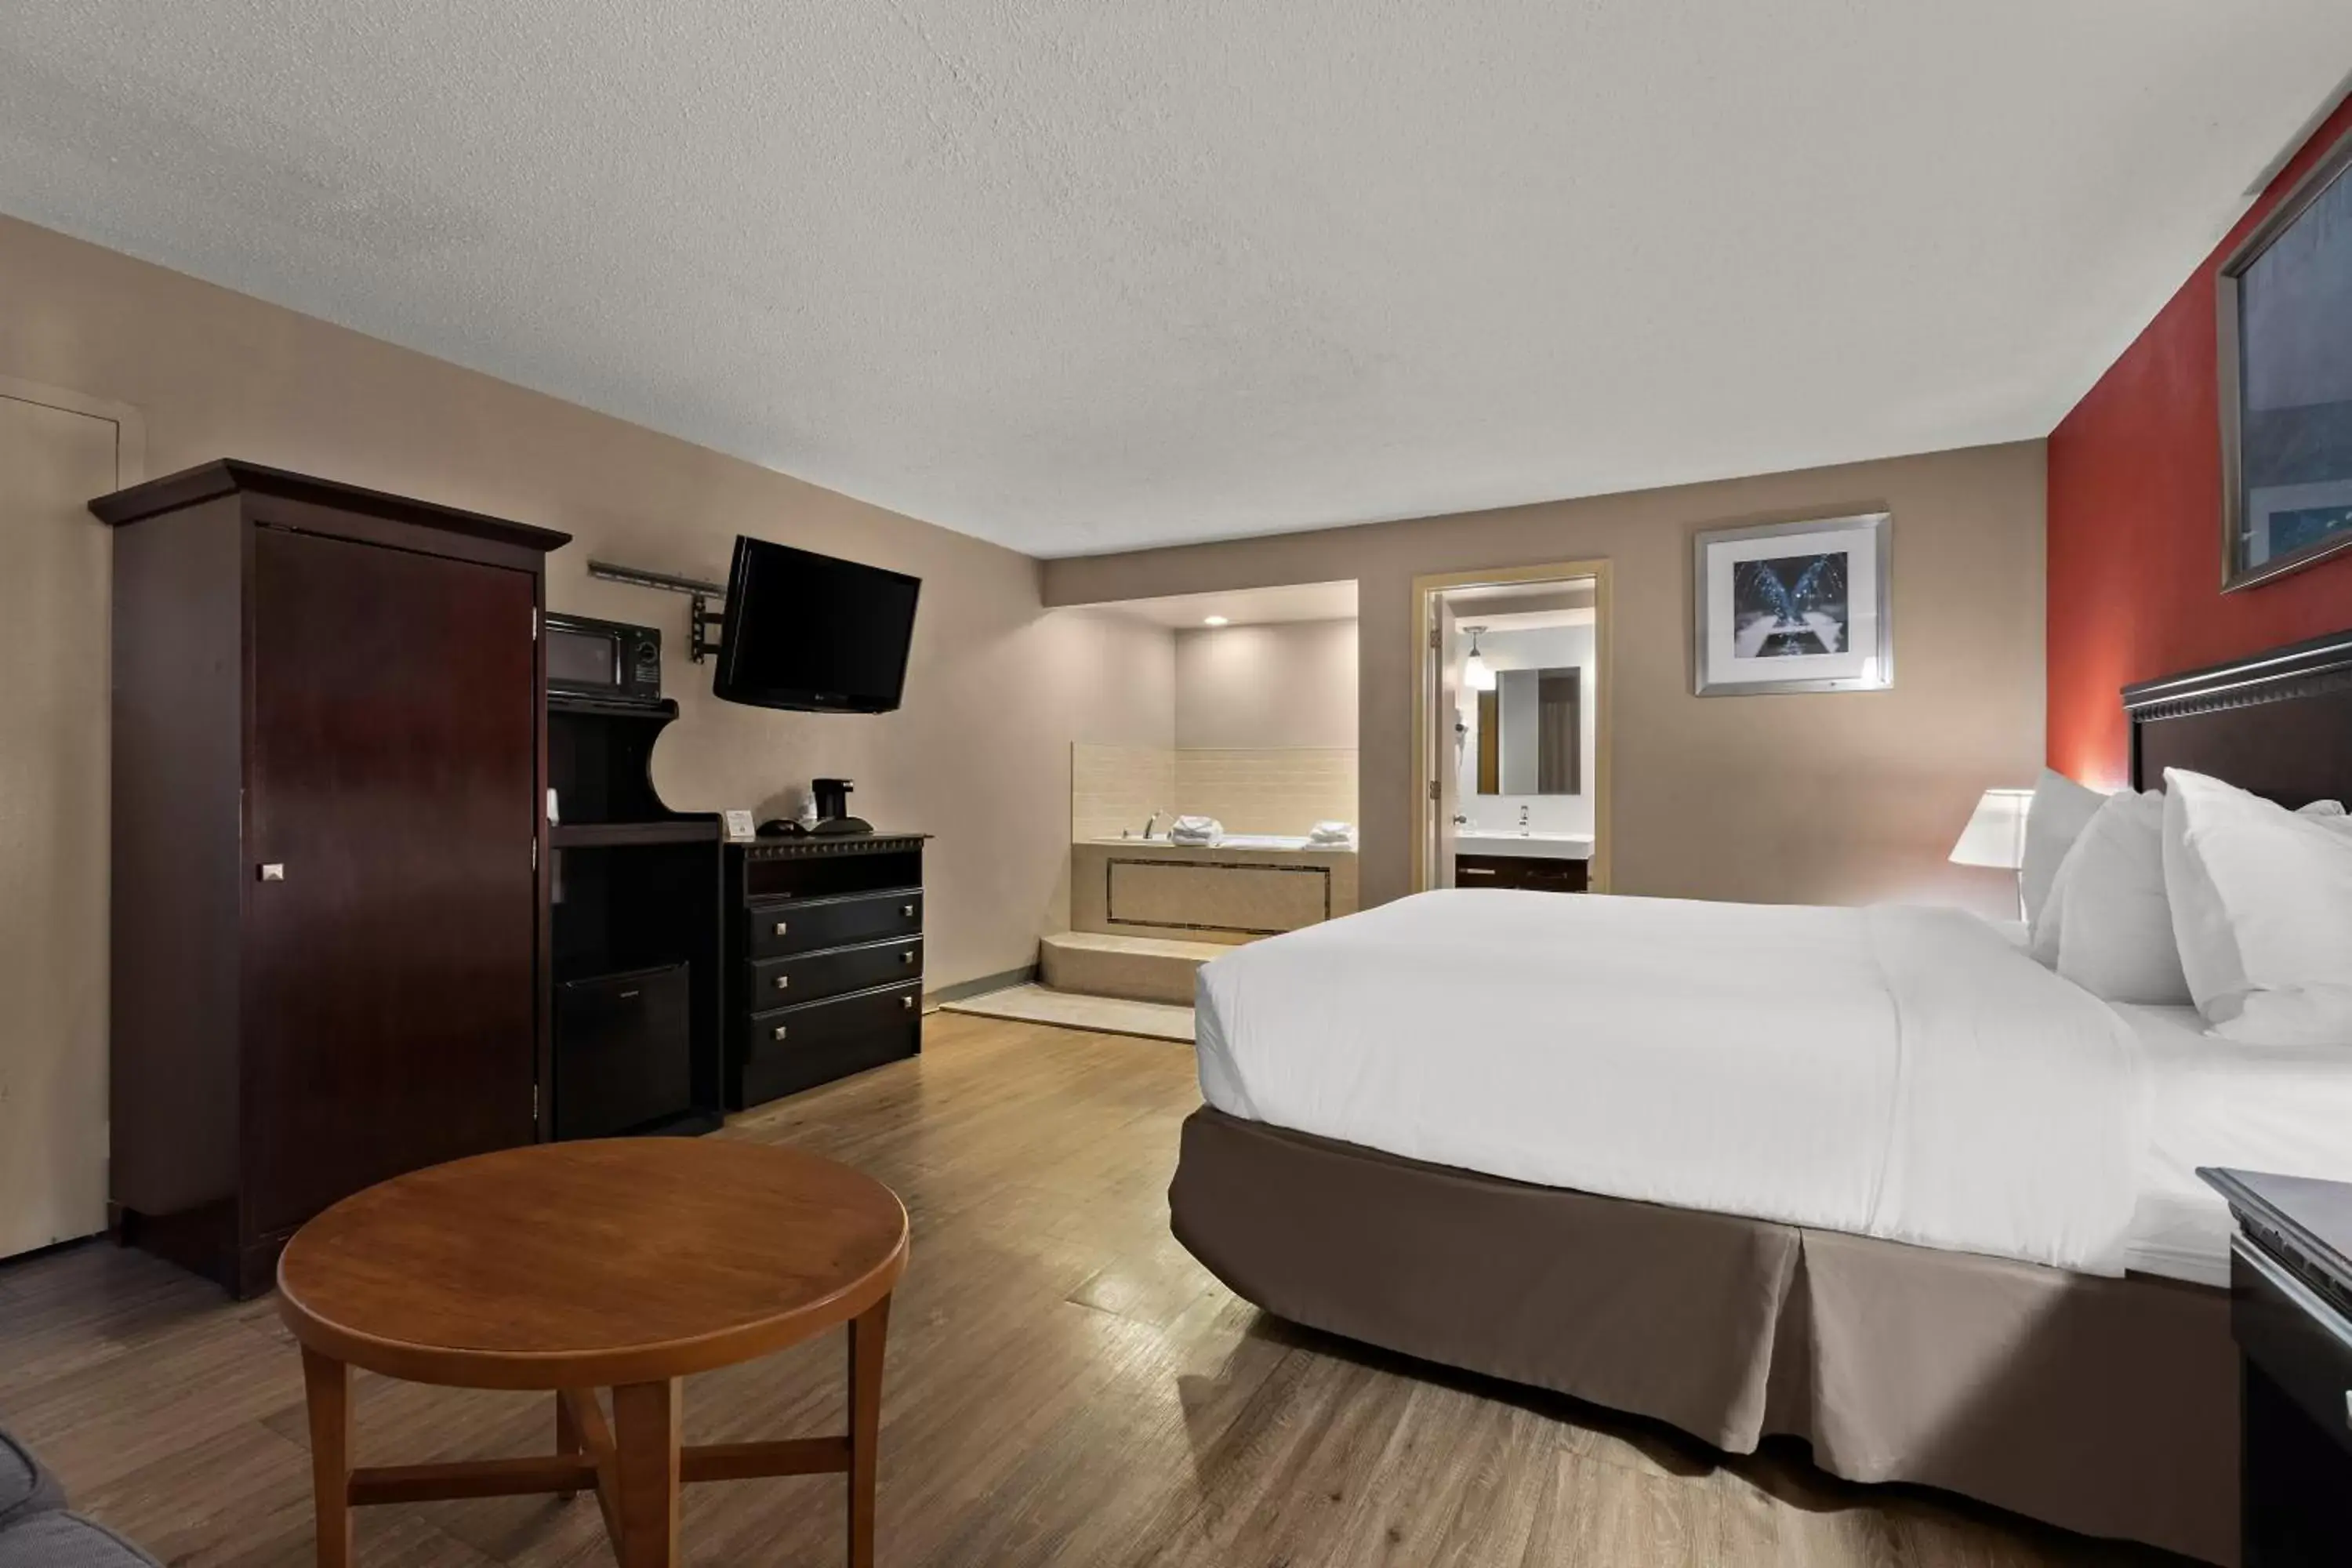 Bedroom, TV/Entertainment Center in Quality Inn Wayne - Fairfield Area